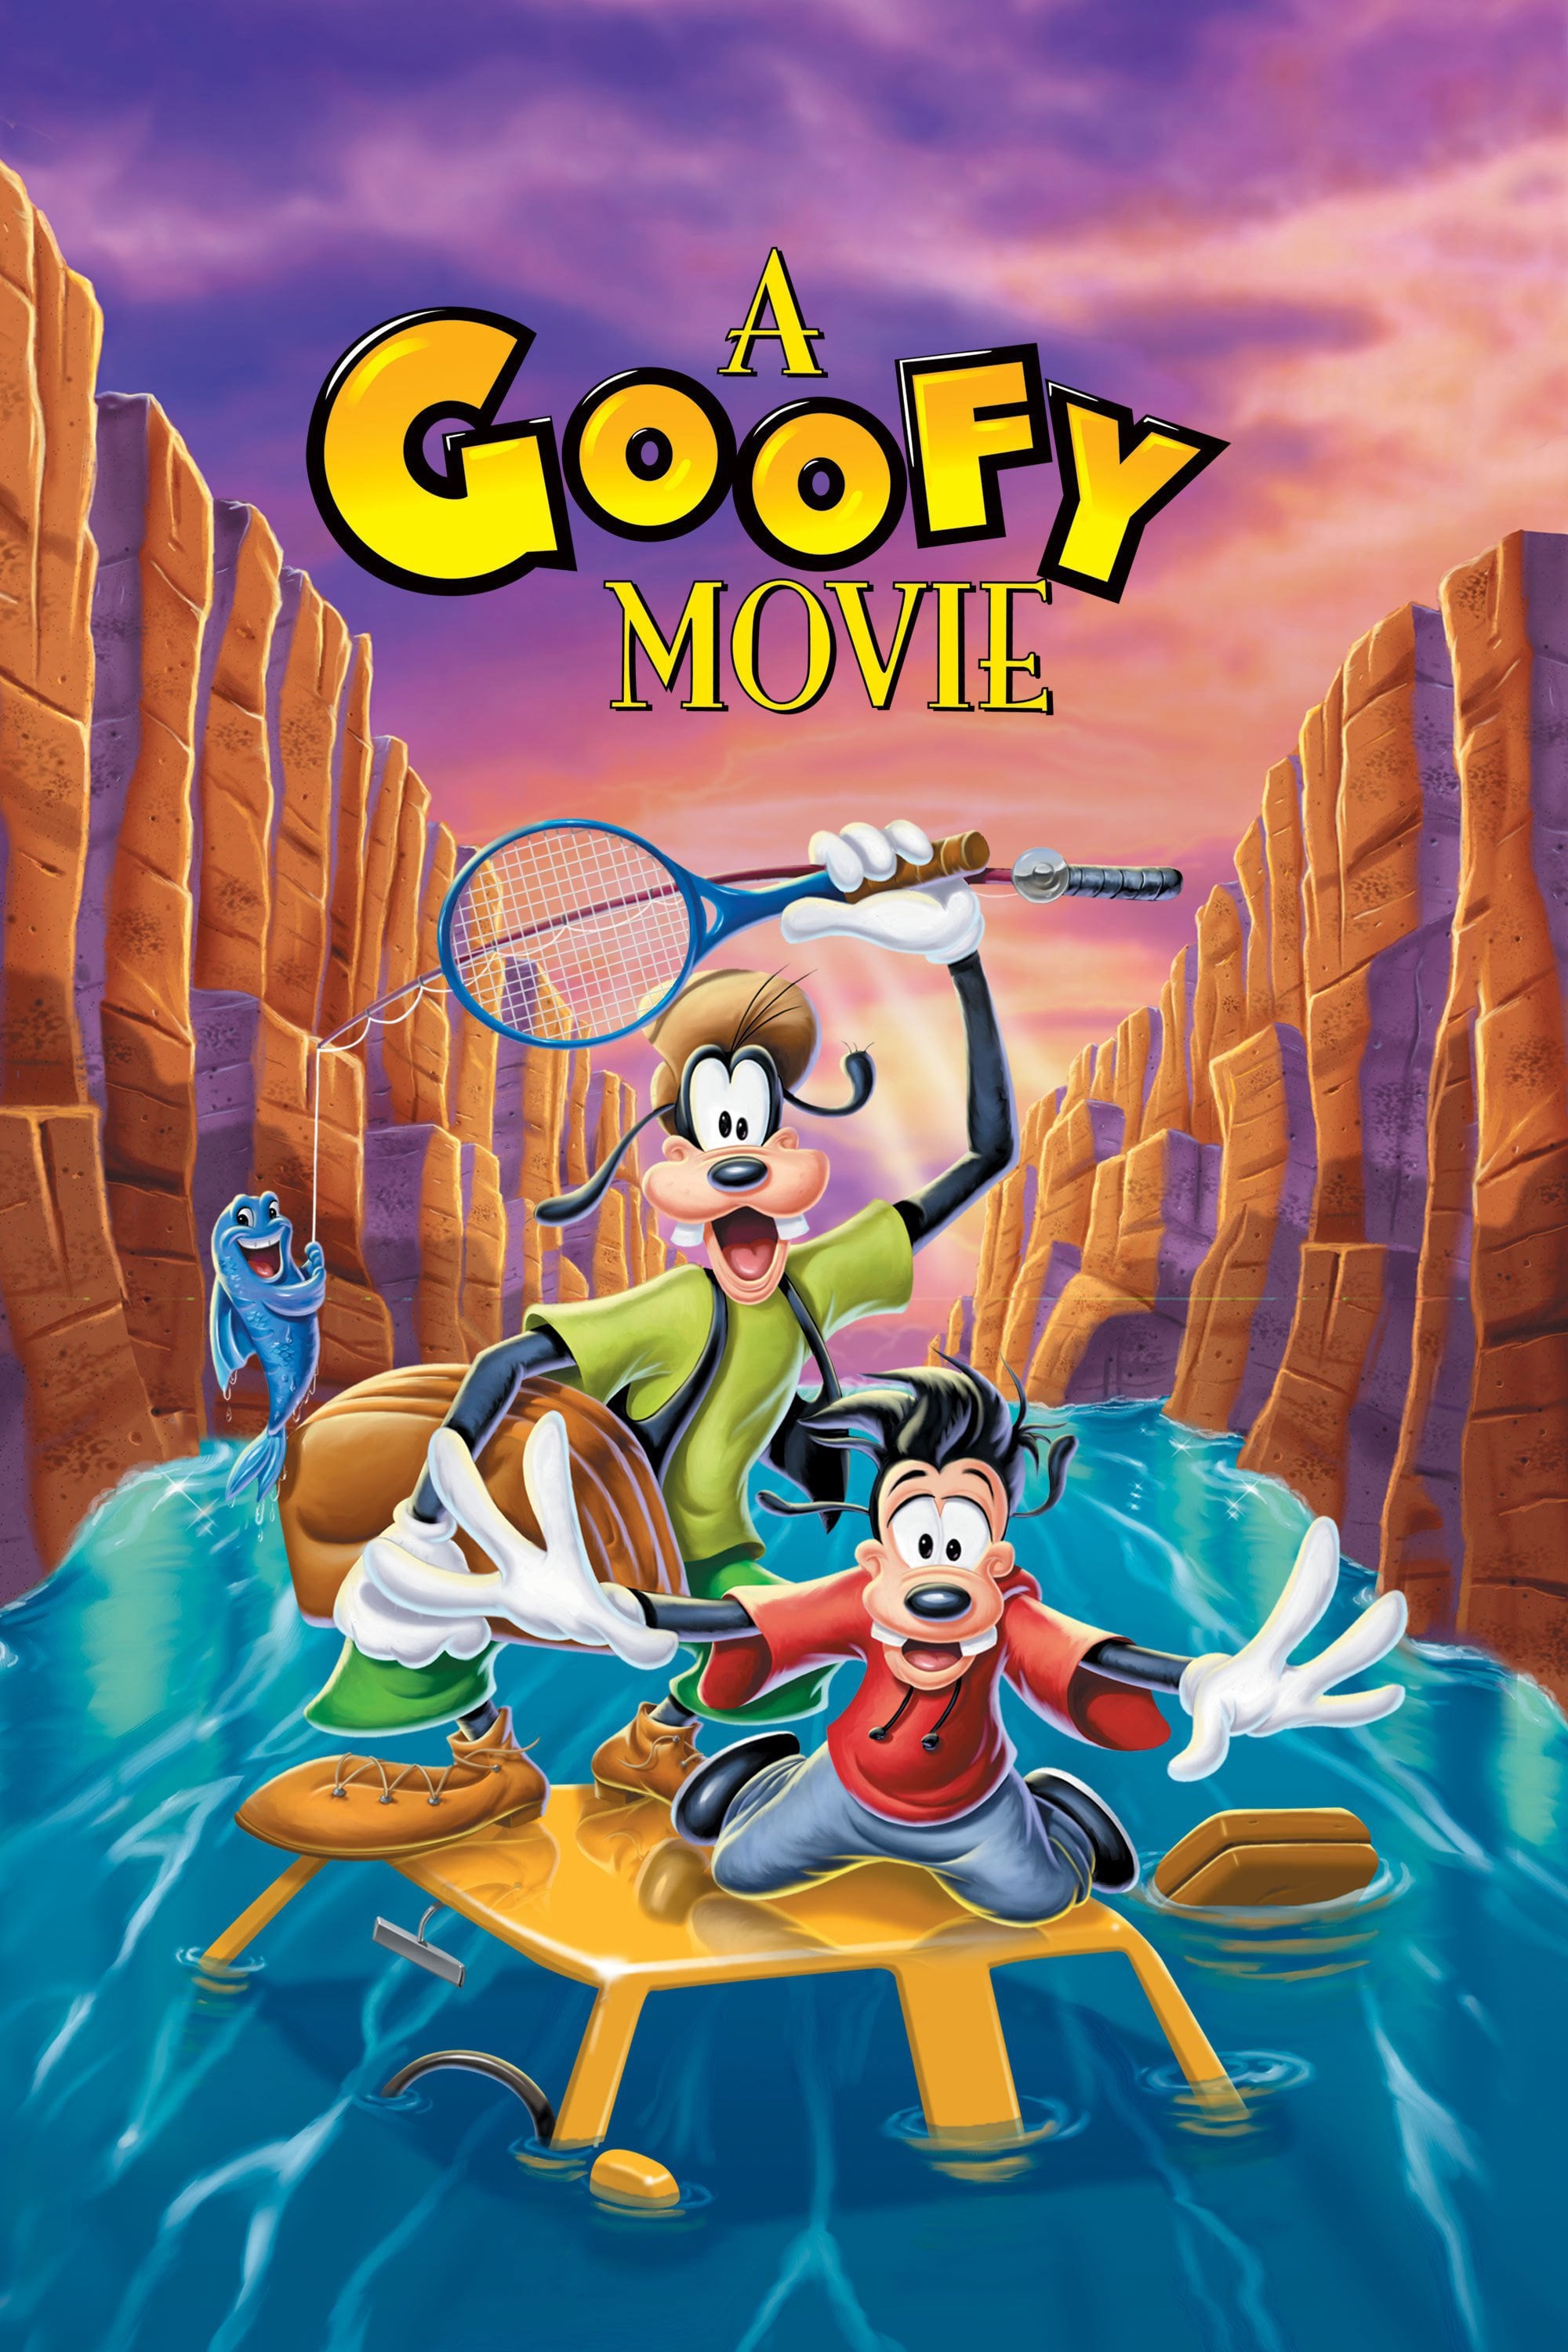 Goofy e hijo (1995)